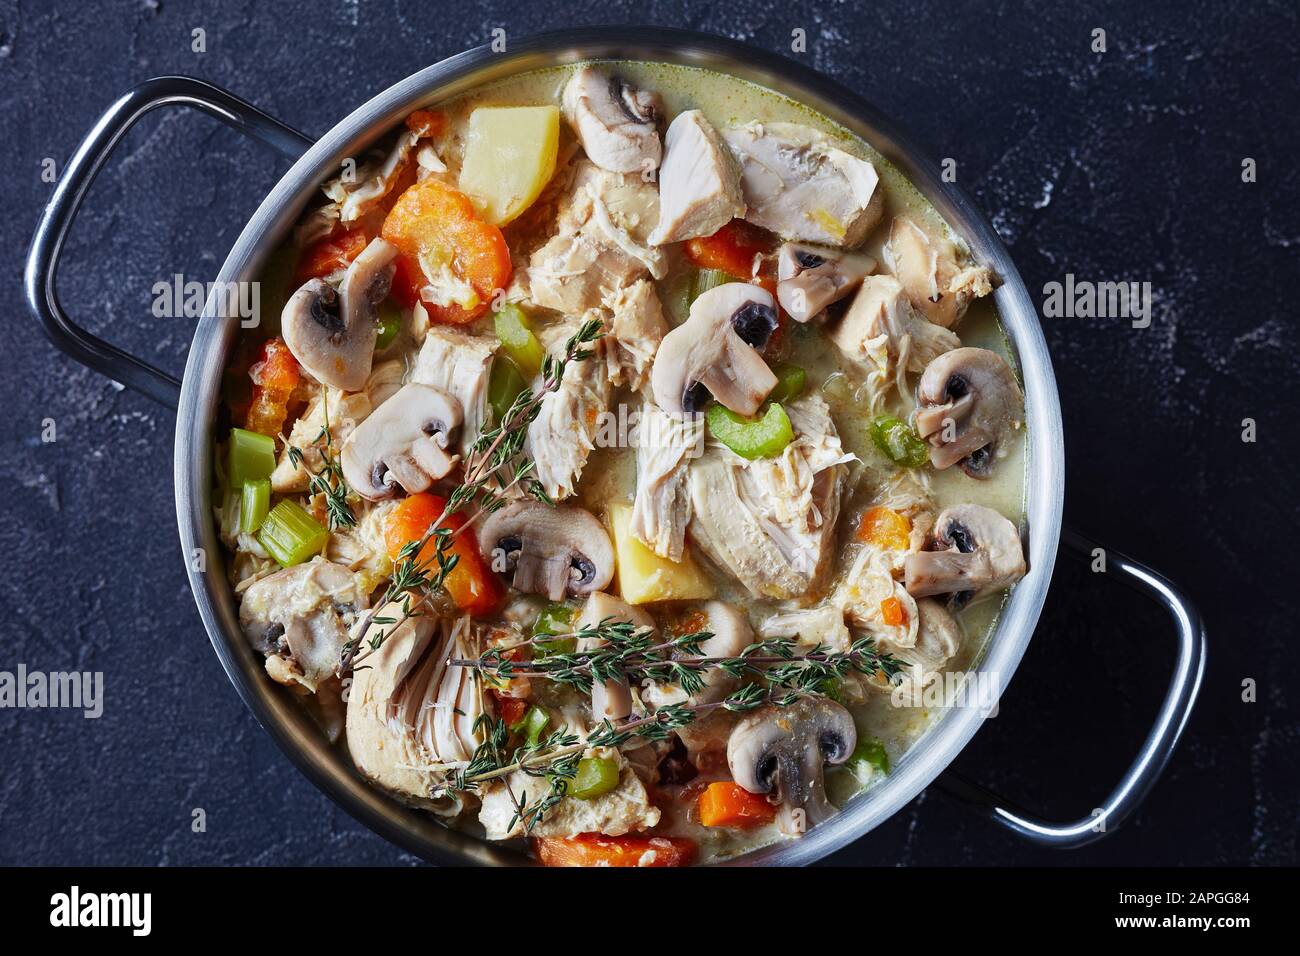 ragoût traditionnel de poulet cuit lentement avec légumes et sauce crémeuse dans une casserole sur une table en béton, vue horizontale de dessus, plat, gros plan Banque D'Images